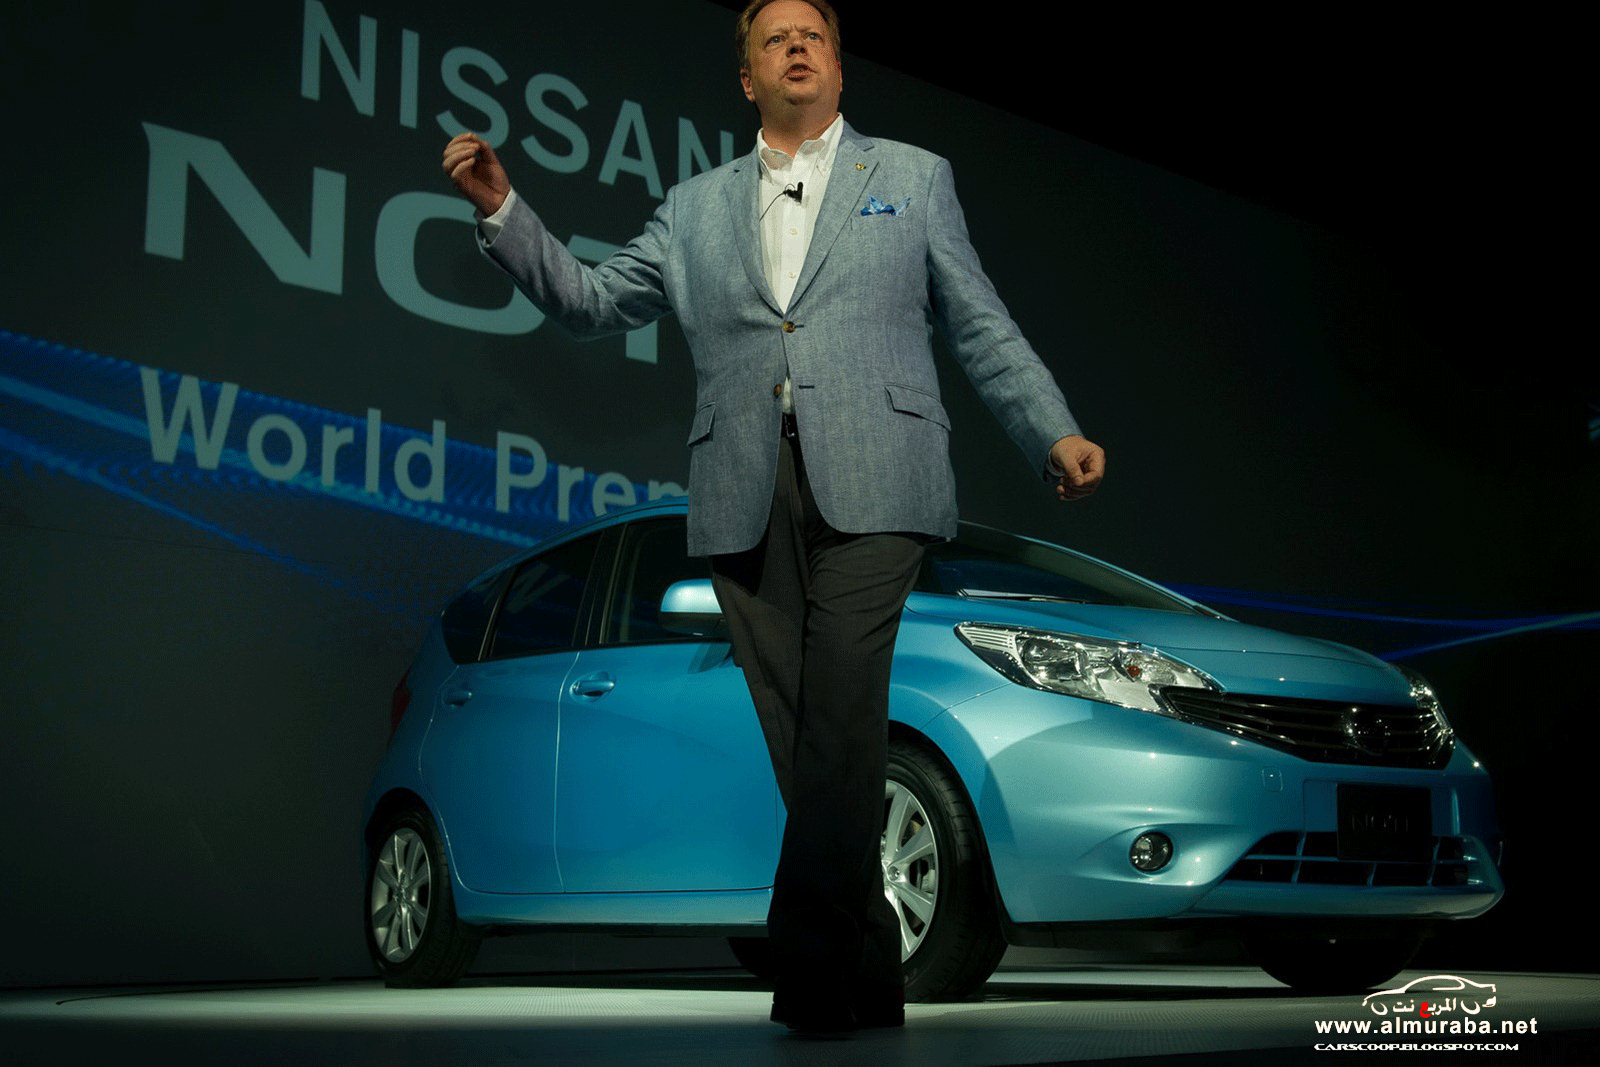 نيسان نوت 2013 الجديدة السيارة الاقتصادية صور واسعار ومواصفات Nissan Note 2013